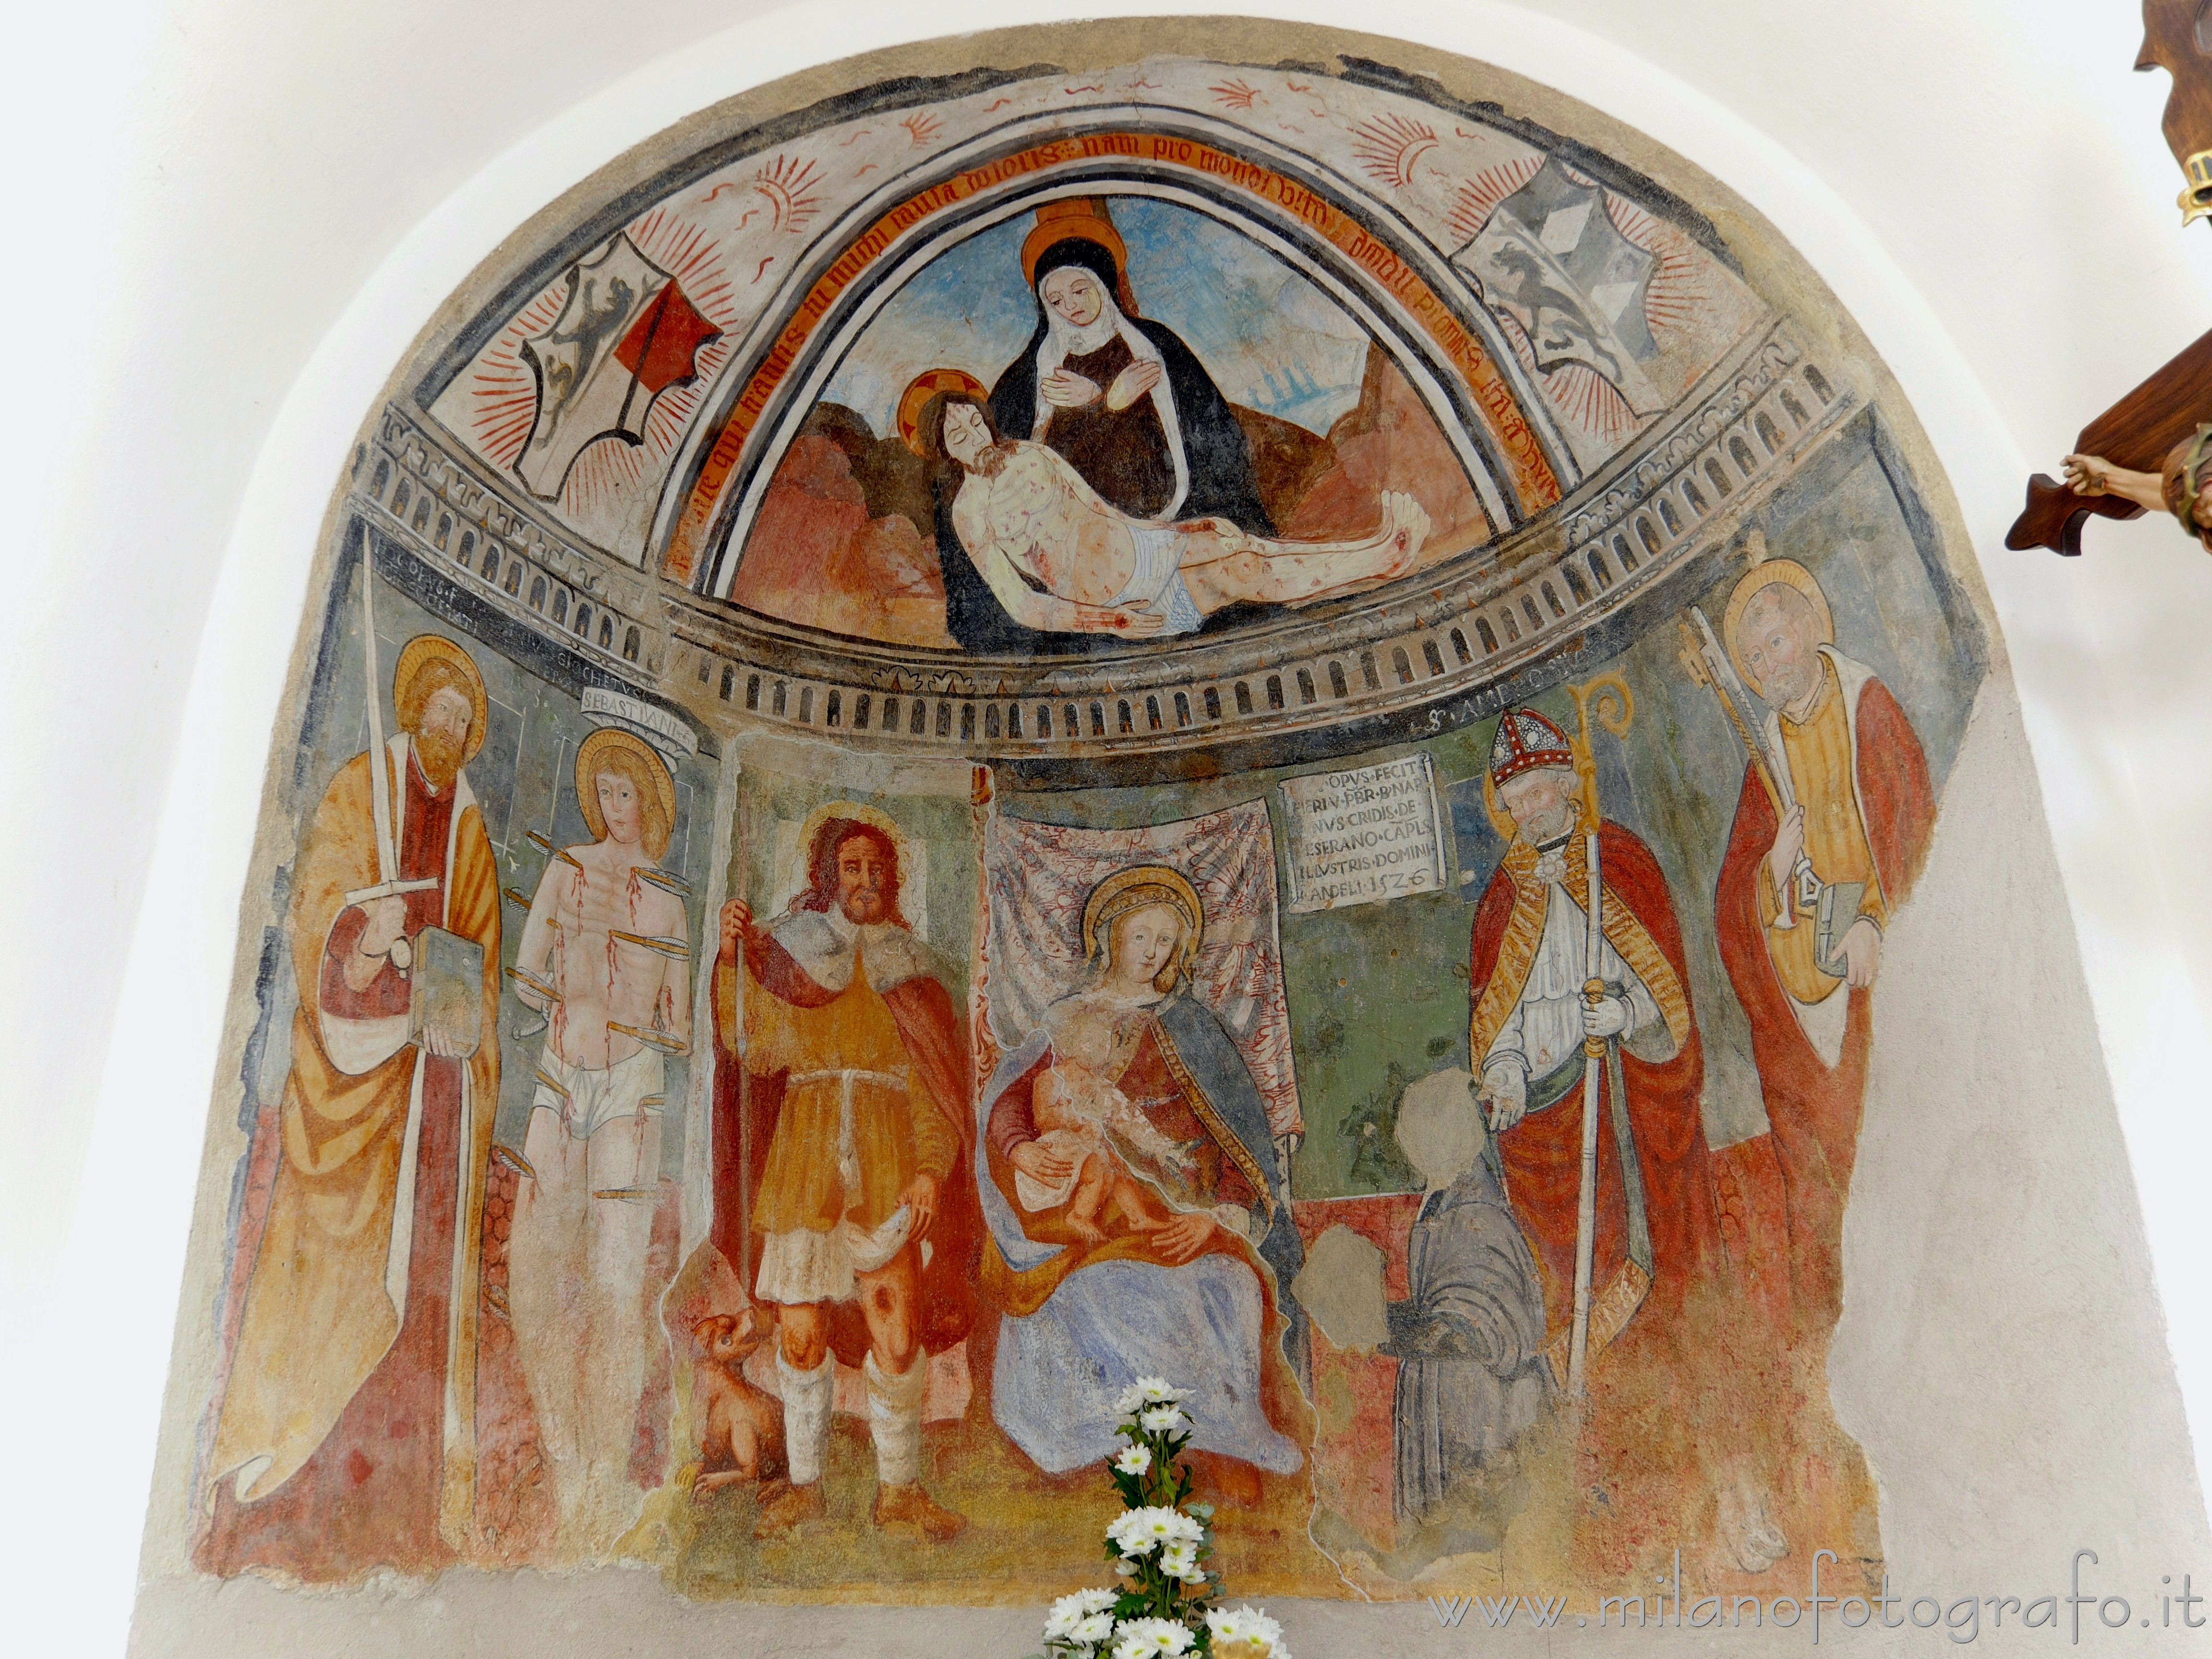 Gaglianico (Biella, Italy): Apse of the Oratory of San Rocco - Gaglianico (Biella, Italy)